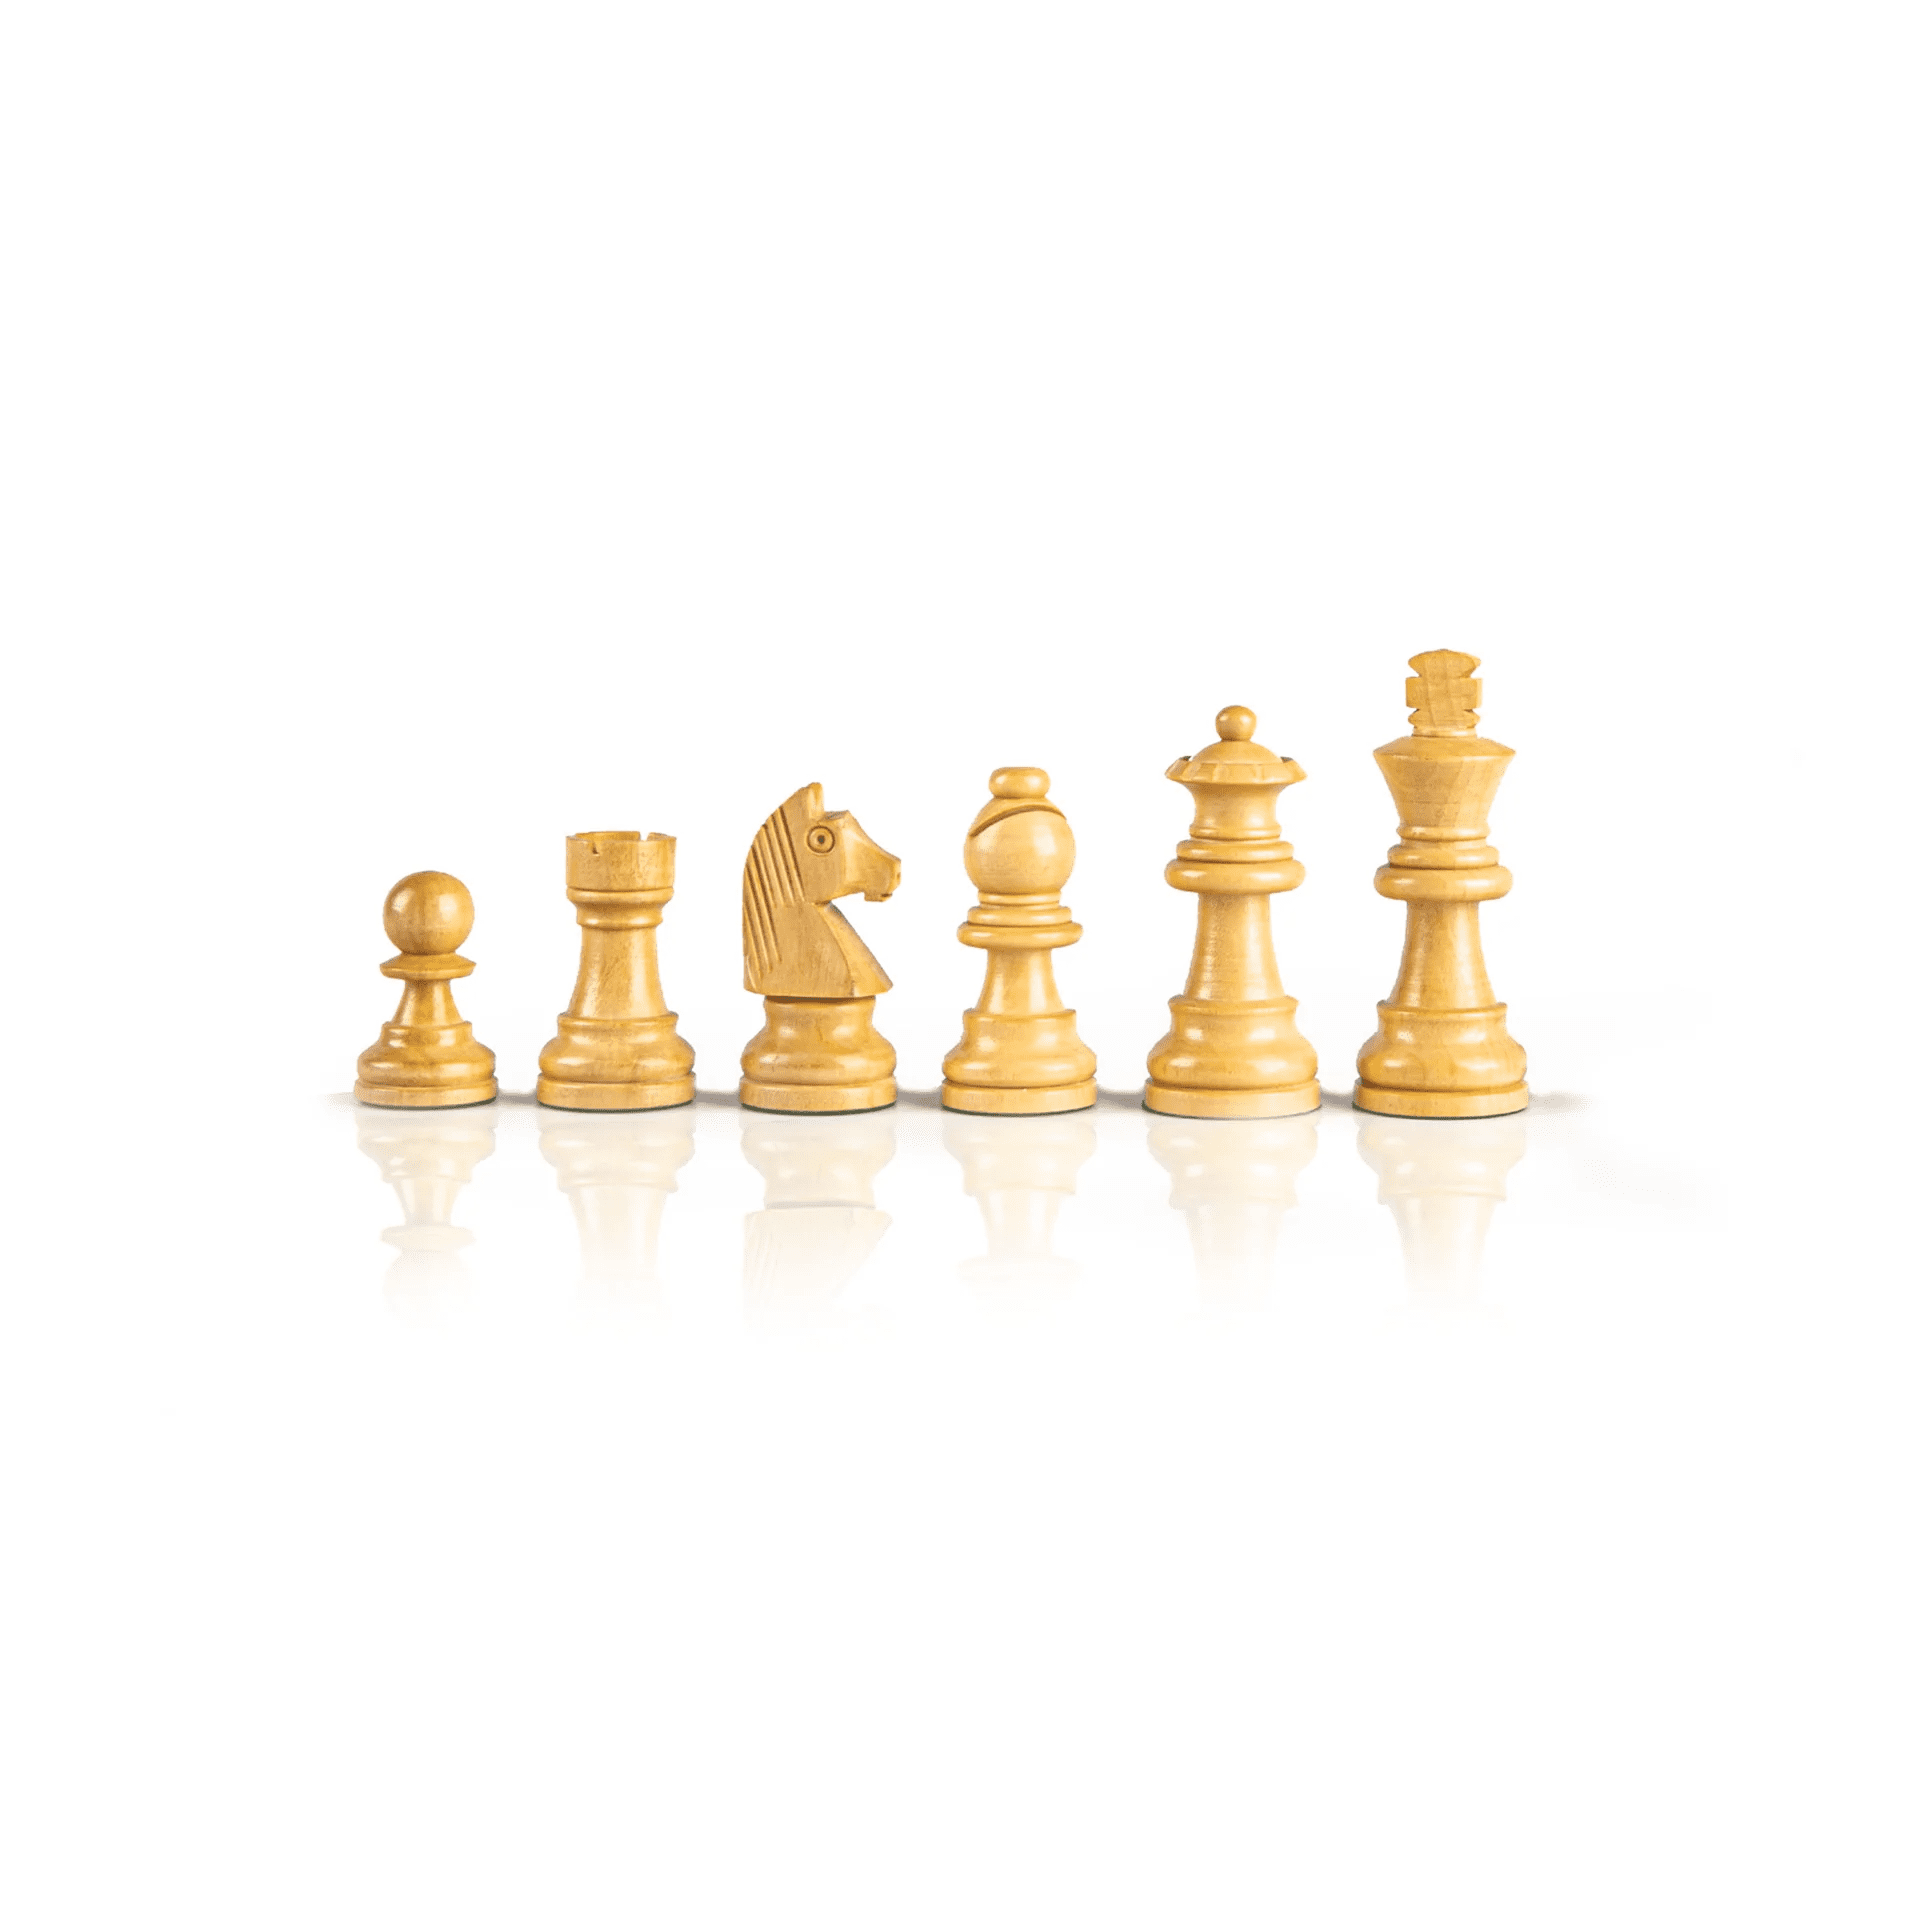 Staunton houten schaakstukken - Koningshoogte 6.5cm